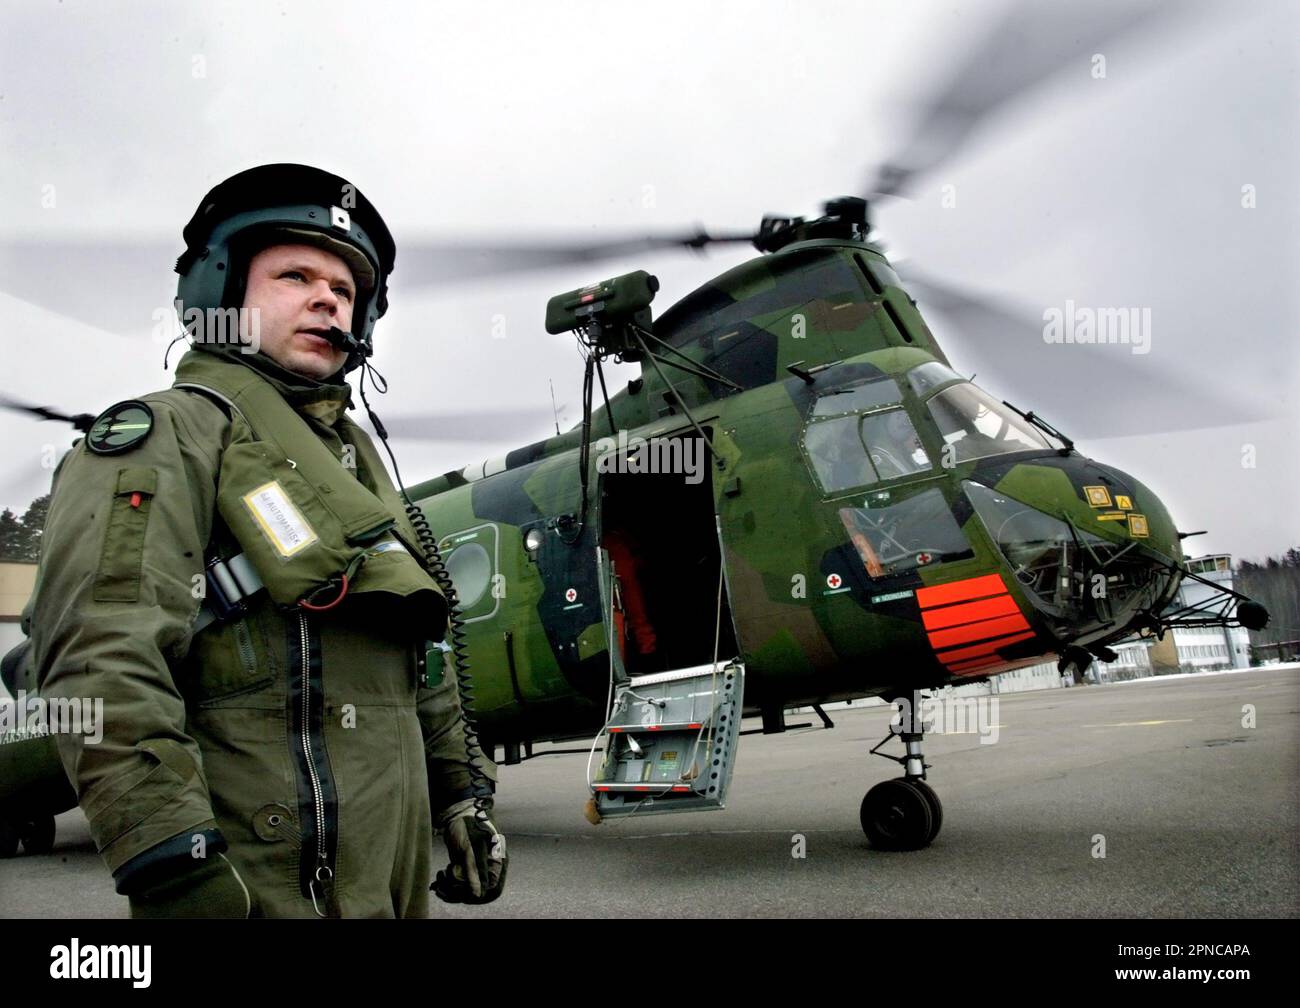 Helikopter 4 der schwedischen Luftwaffe, HKP 4, vom Helikopter-Bataillon, Marinestützpunkt Berga. HKP 4 wurde bei der U-Boot-Jagd und bei Rettungsmissionen wie der Estonia-Katastrophe eingesetzt. Auf dem Bild: Hier während einer Mission im Stockholmer Archipel. Stockfoto